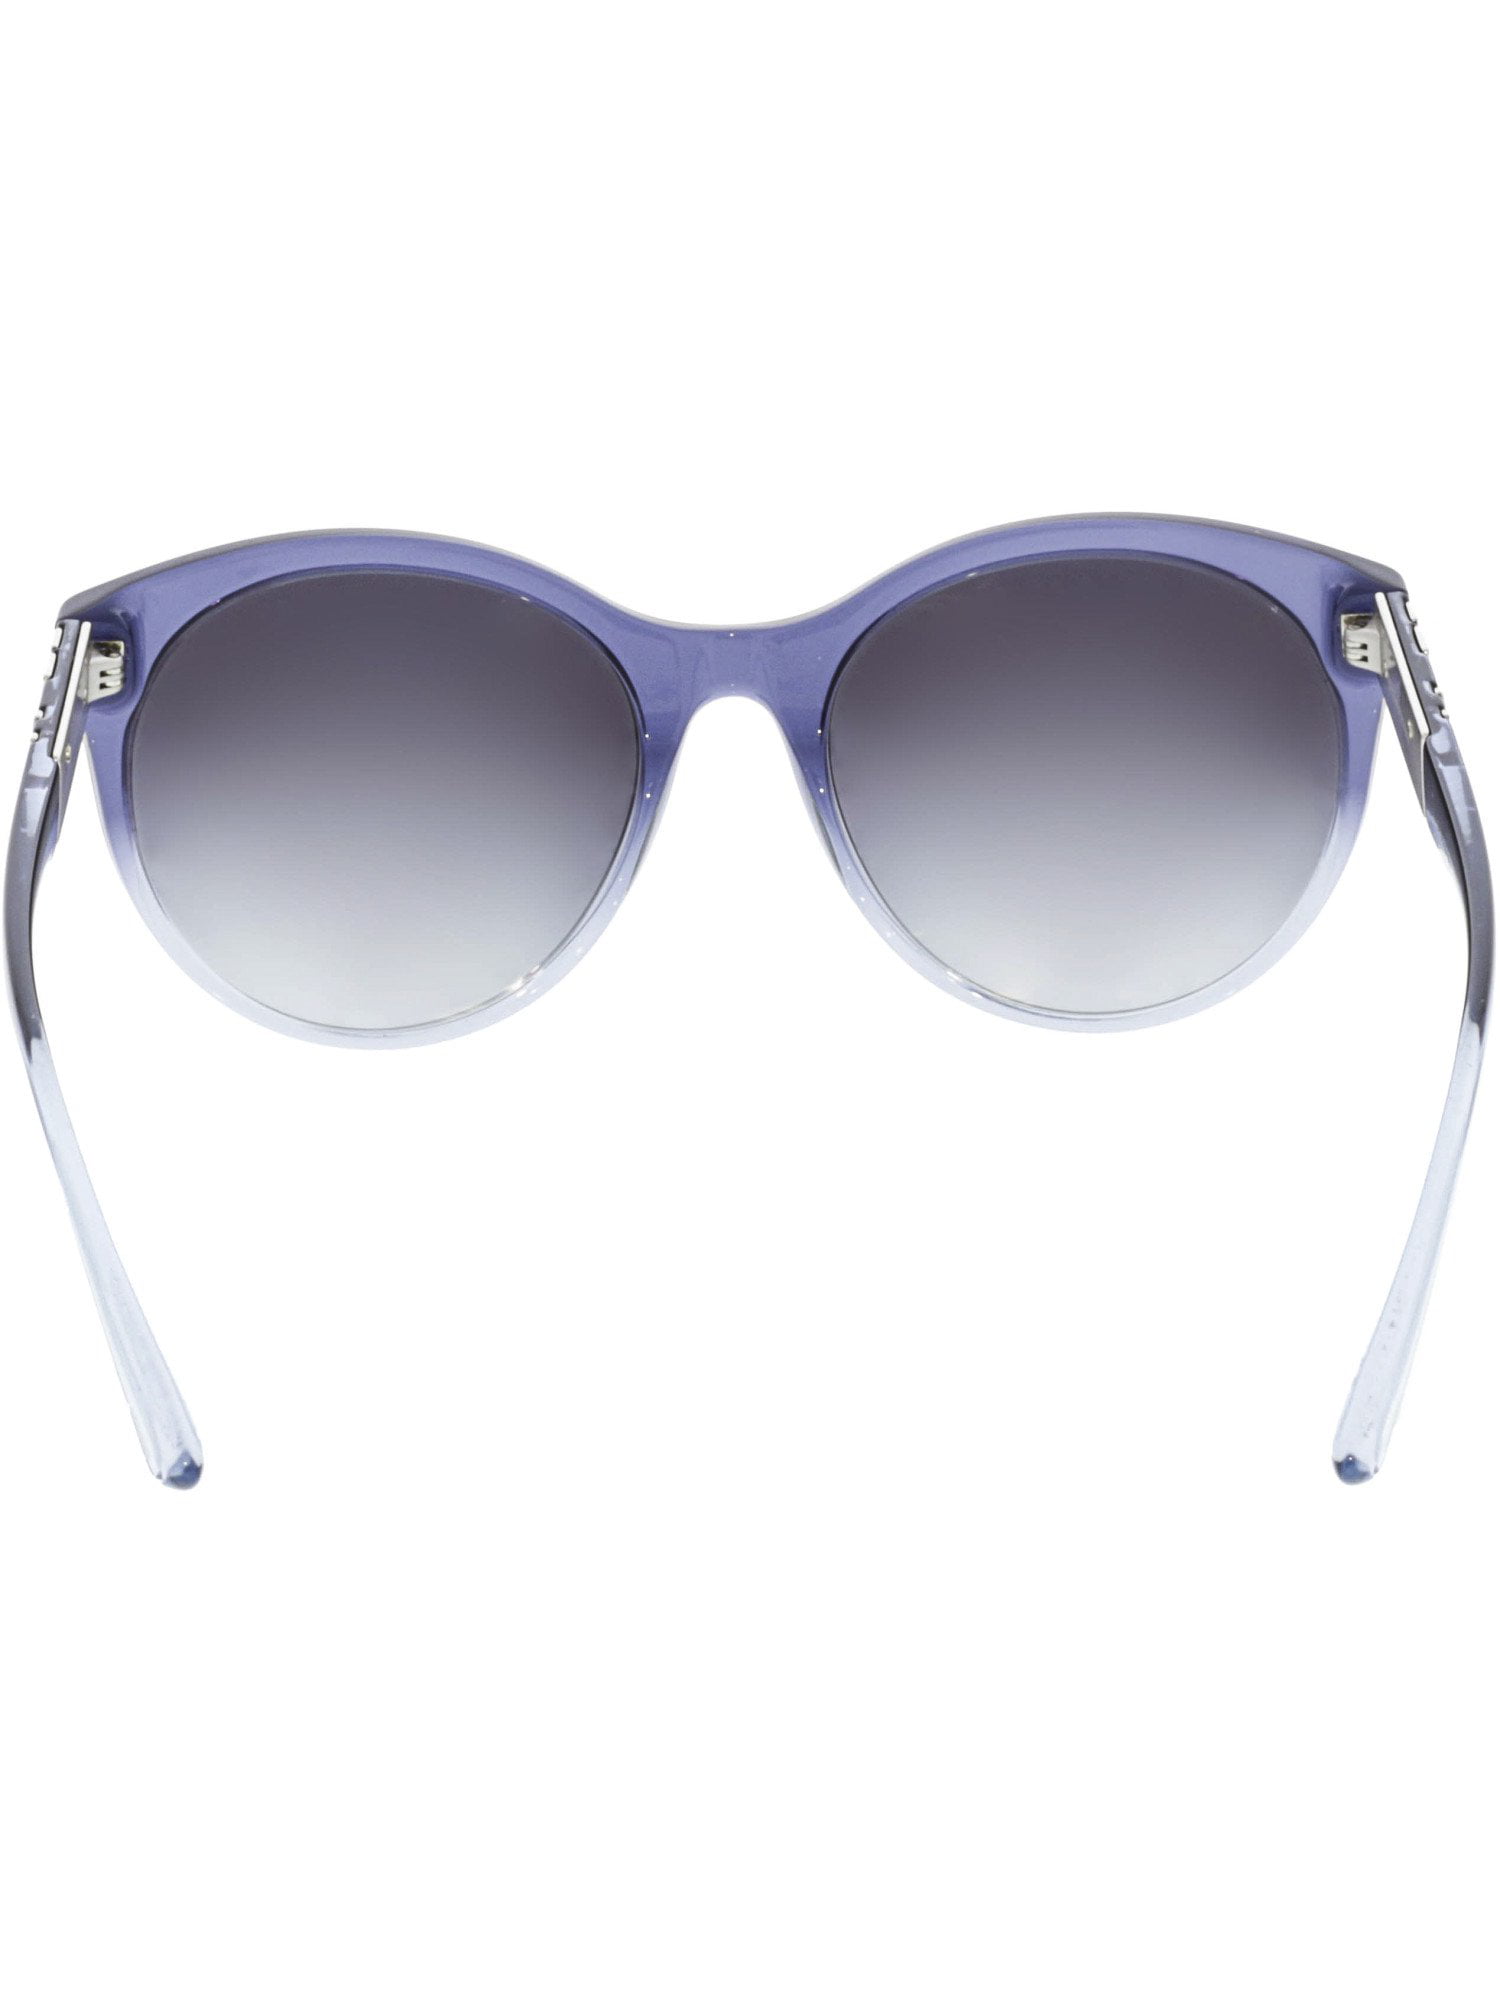 burberry sunglasses womens blue